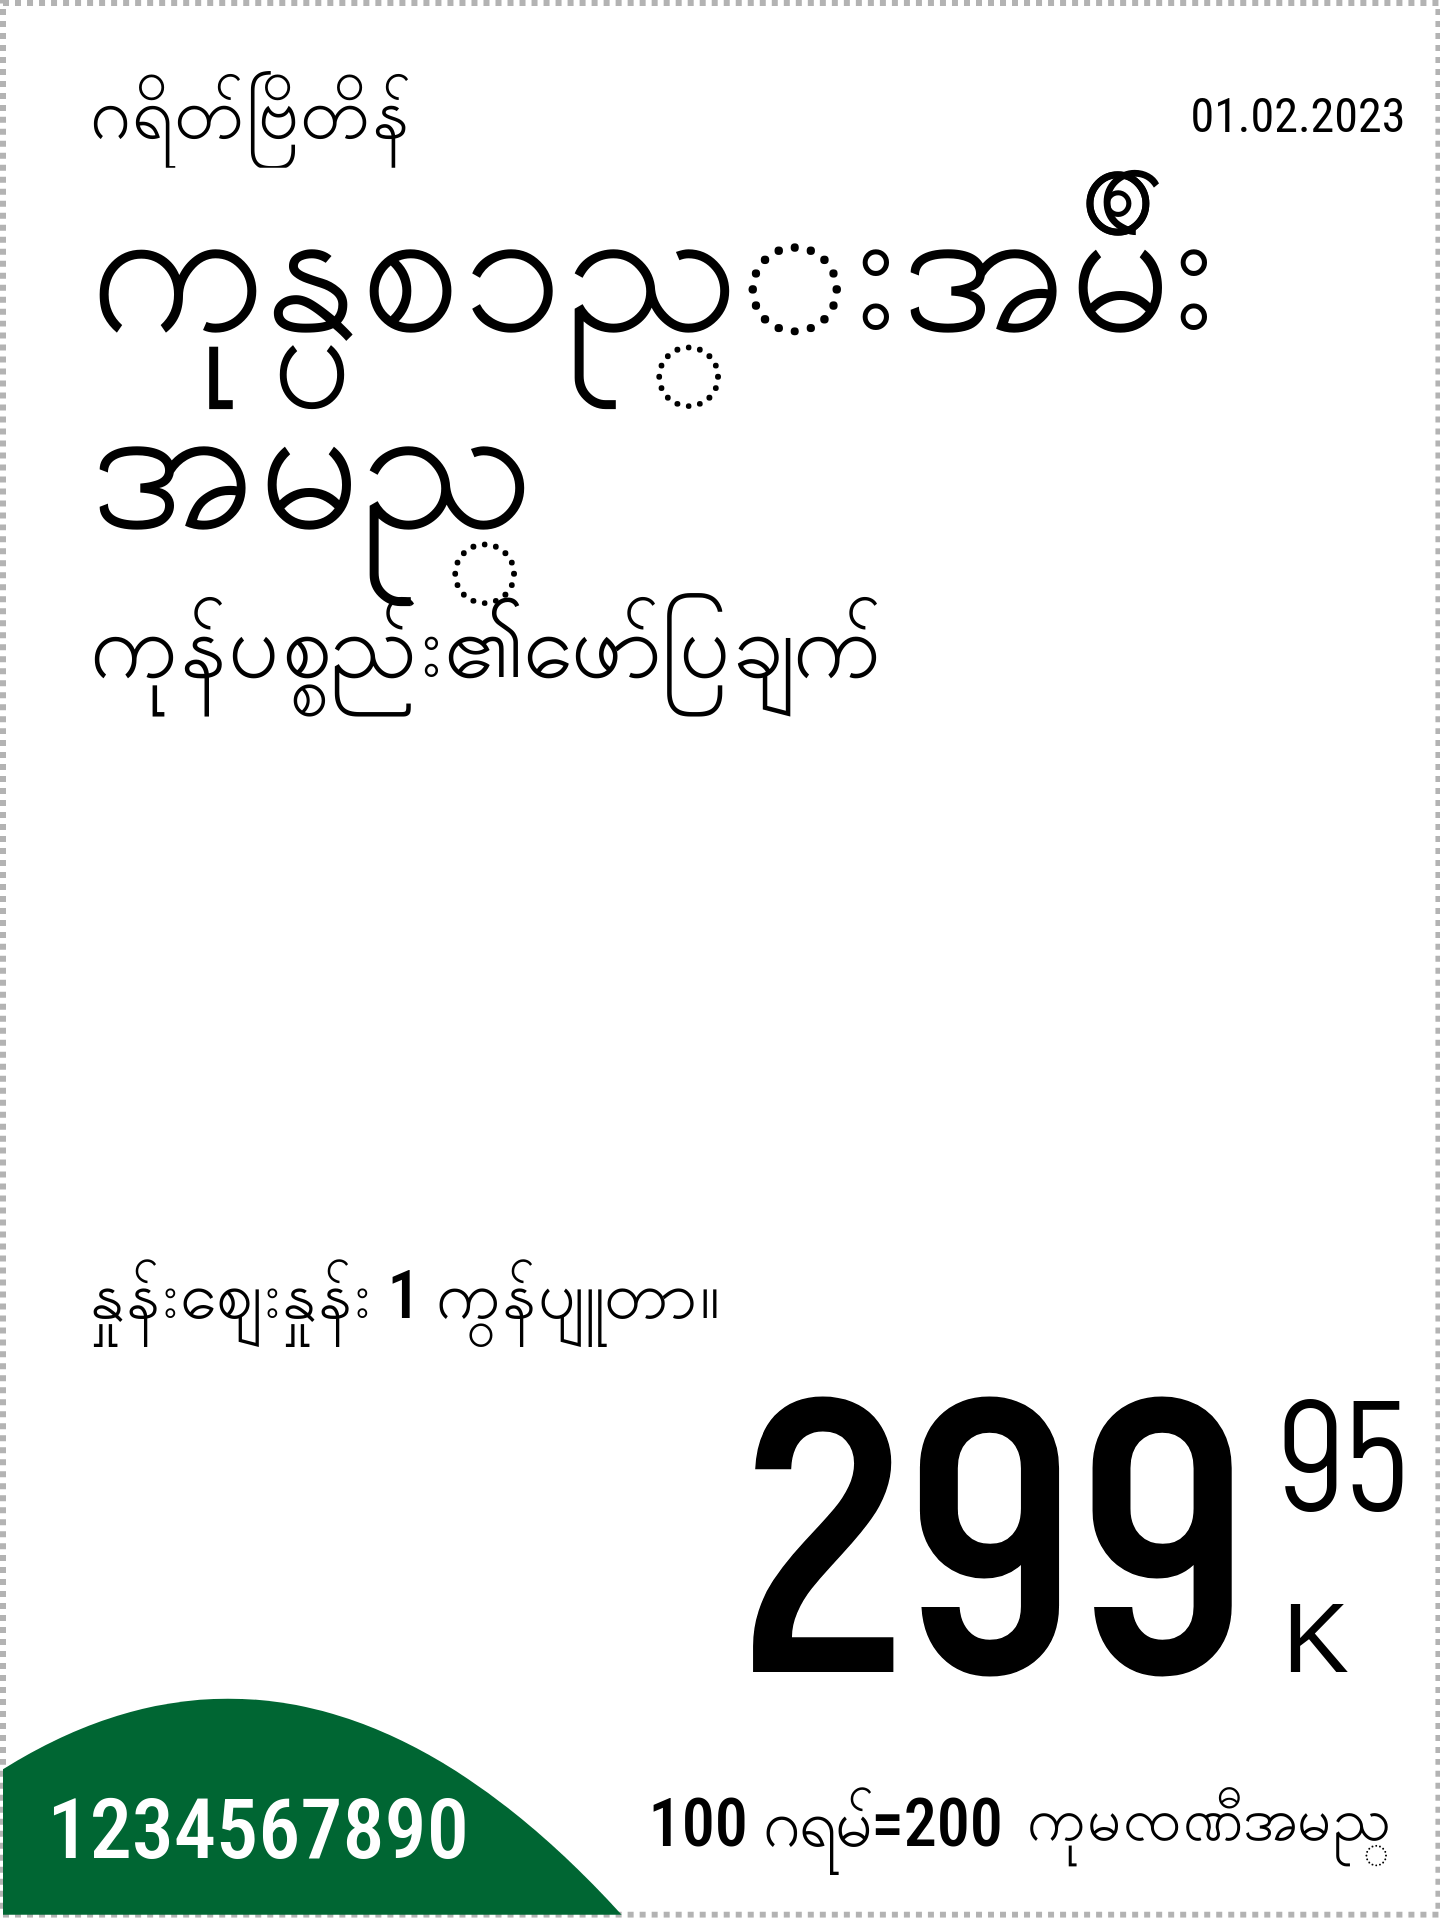 မြန်မာဘာသာ မူလနေရာ / ဒေါင်လိုက် / ပုံမှန်